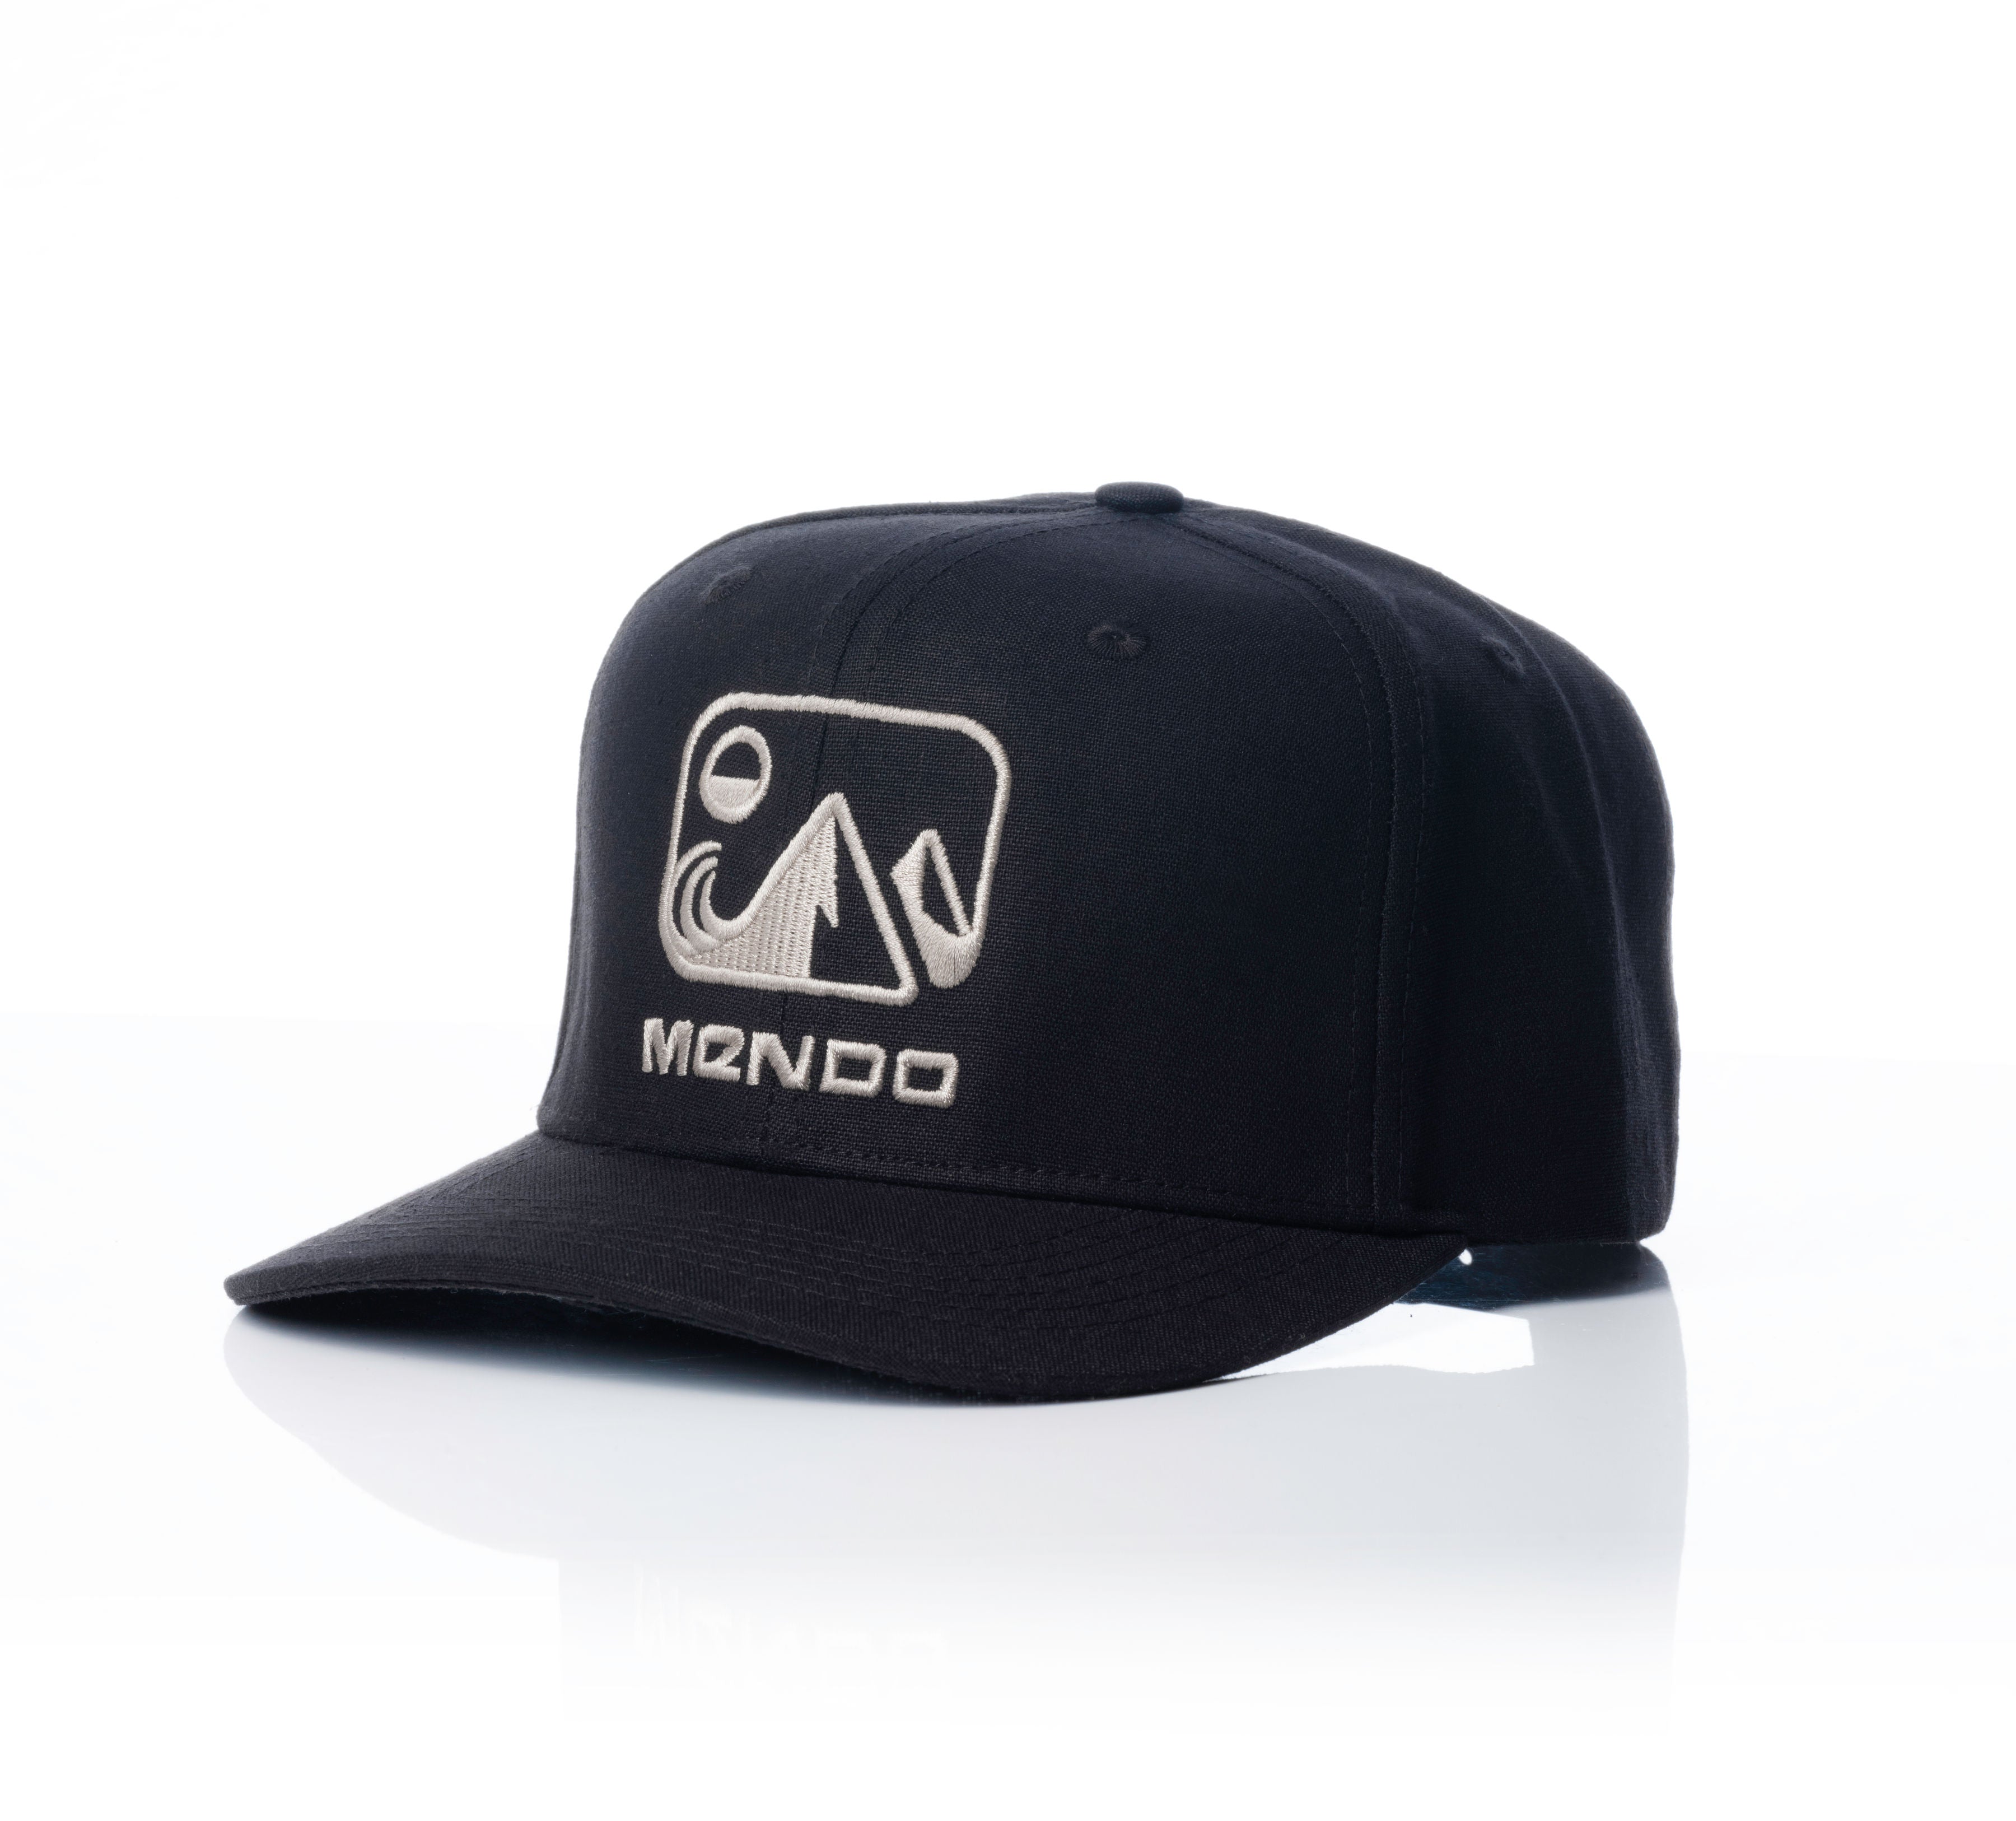 Mendo Eco Hemp Hat Black New New